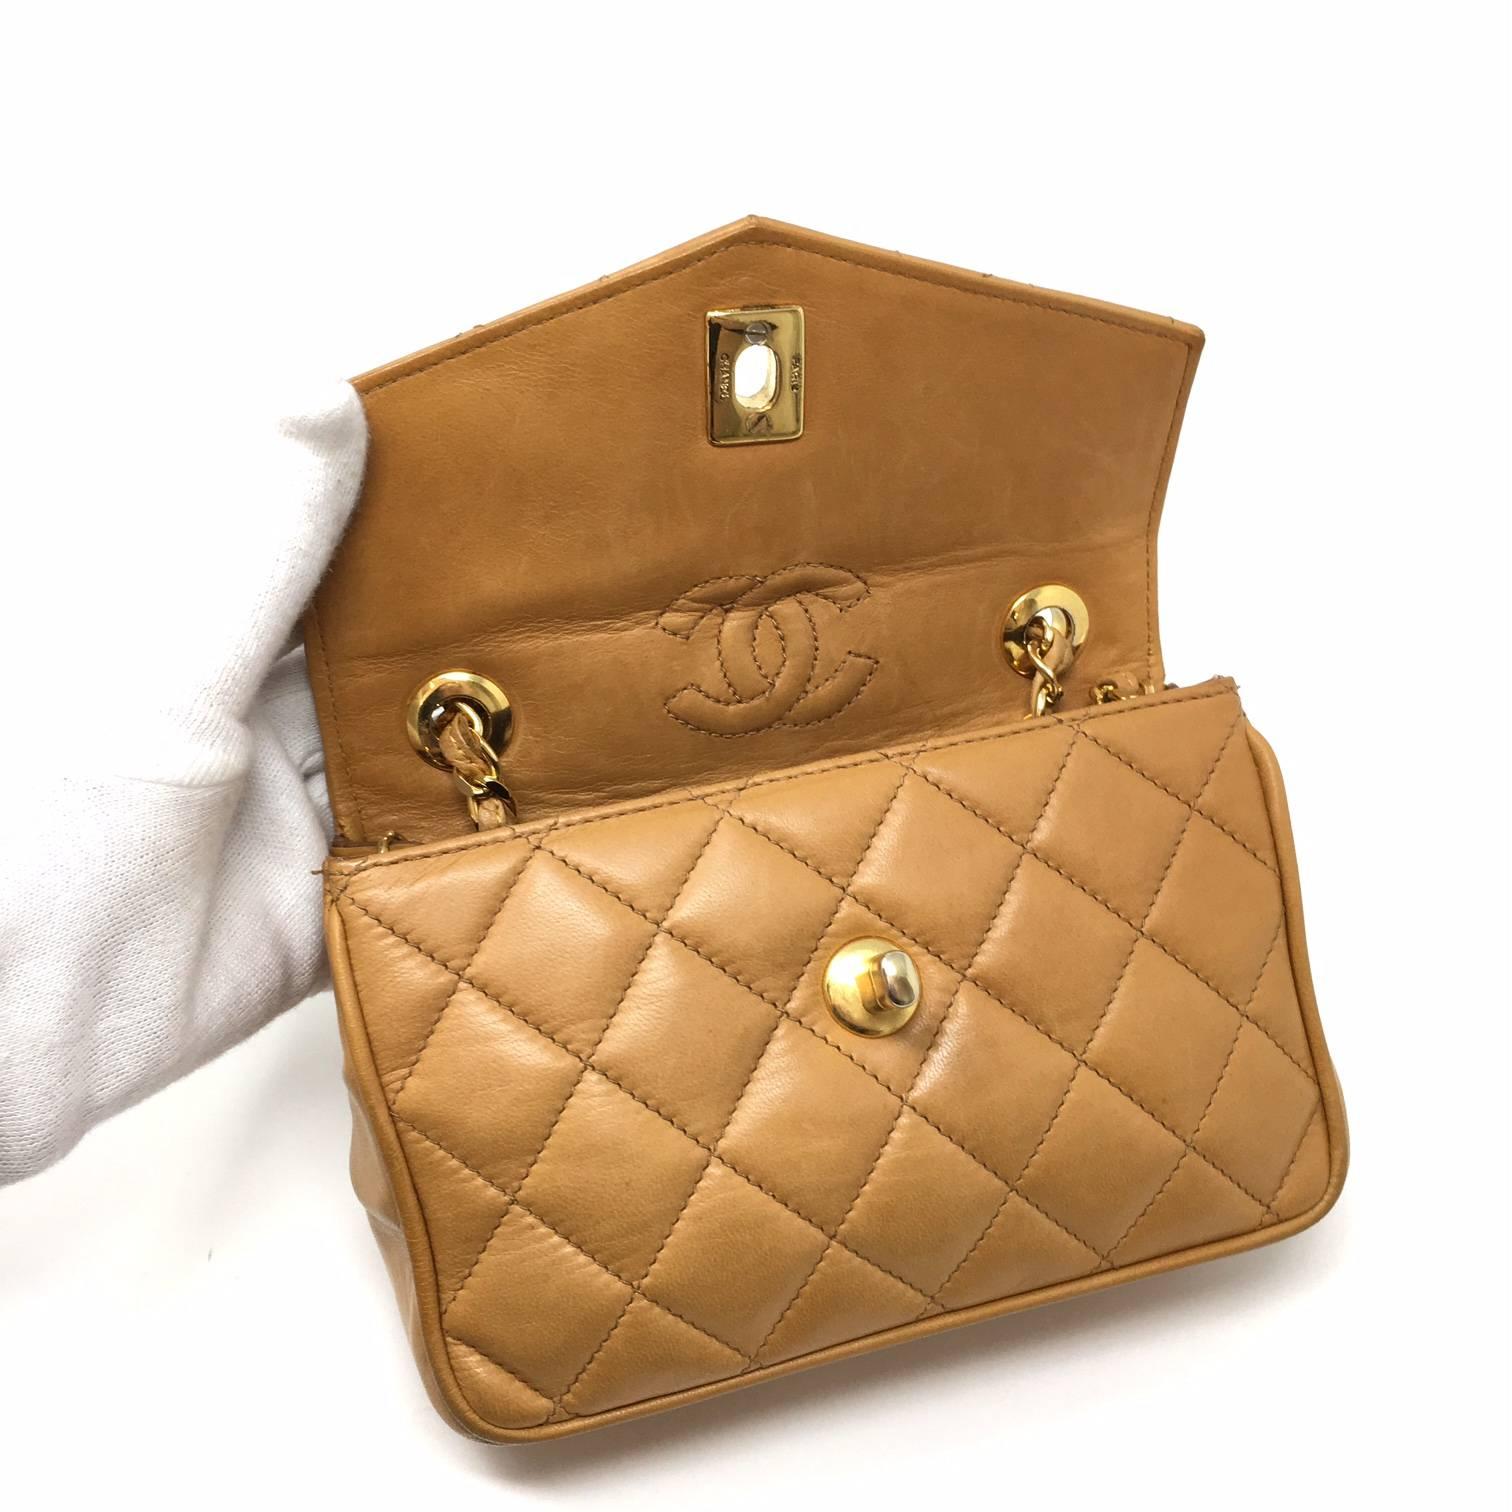 Chanel Paris Mini Vintage Flap Bag, Lambskin Biscuit Color, '80 5